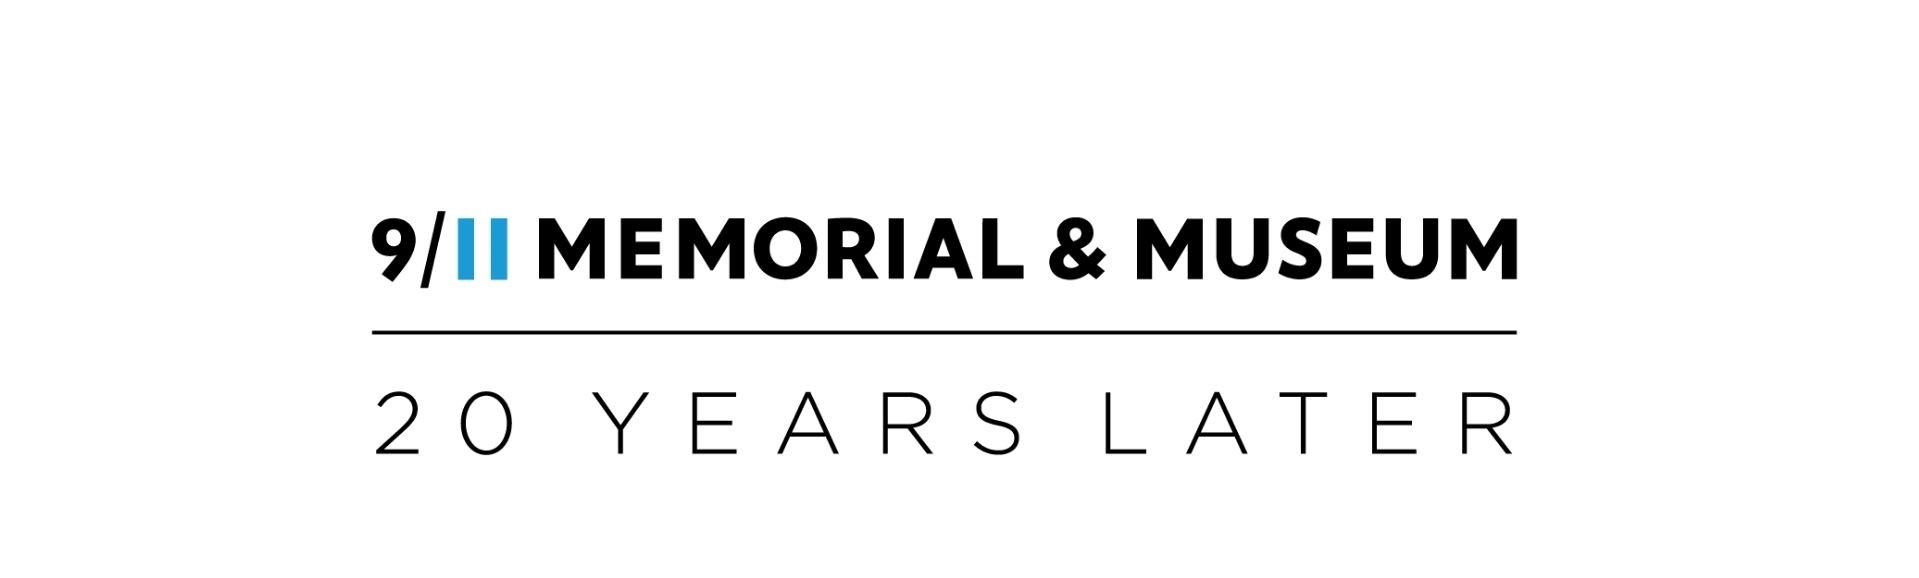 logo - 911 Memorial & Museum 20 years later